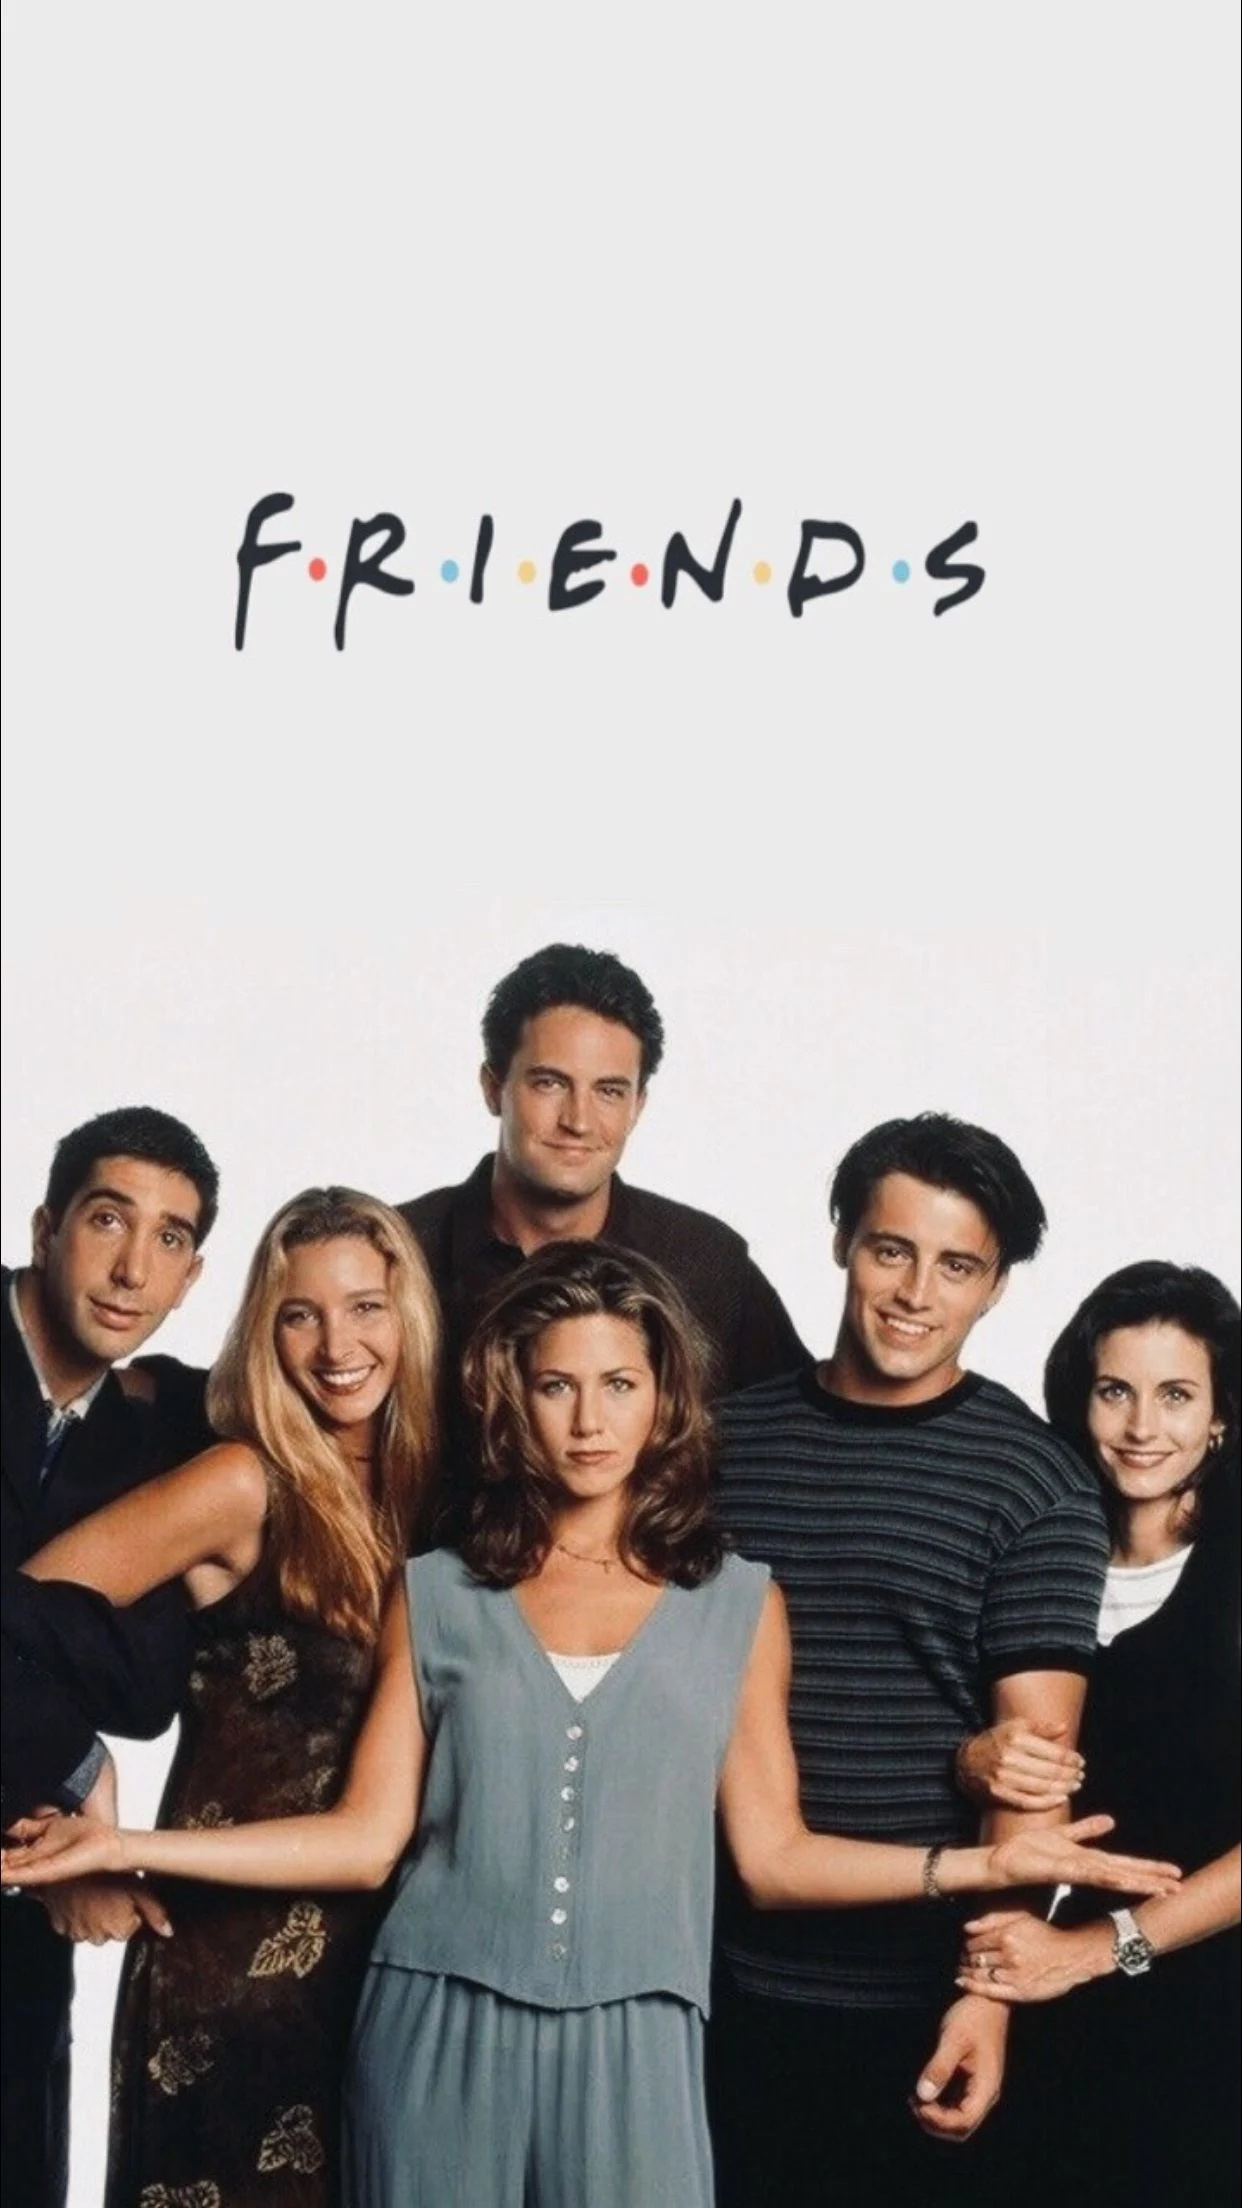 Rachel Green from Friends, Ross Geller wallpapers, Top backgrounds, Friends cast, 1250x2210 HD Phone